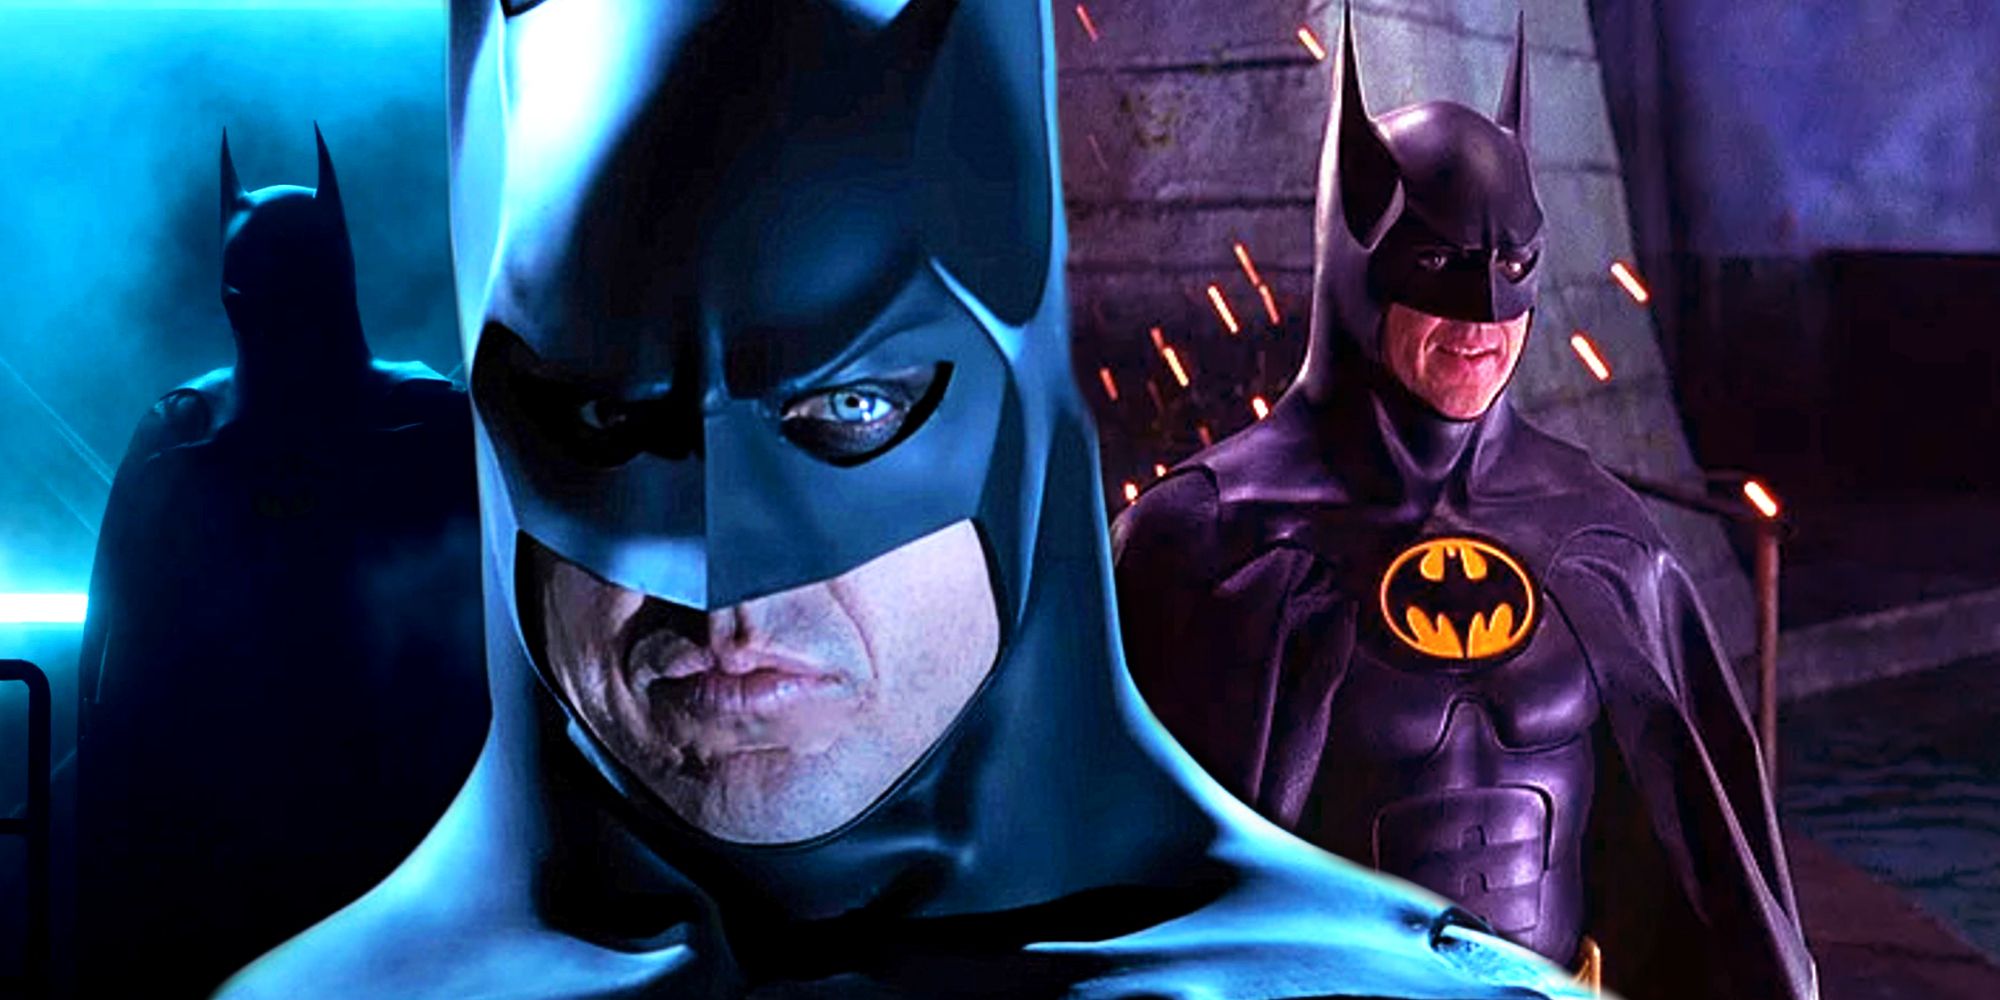 Michael Keaton's Batman Suit in 1989